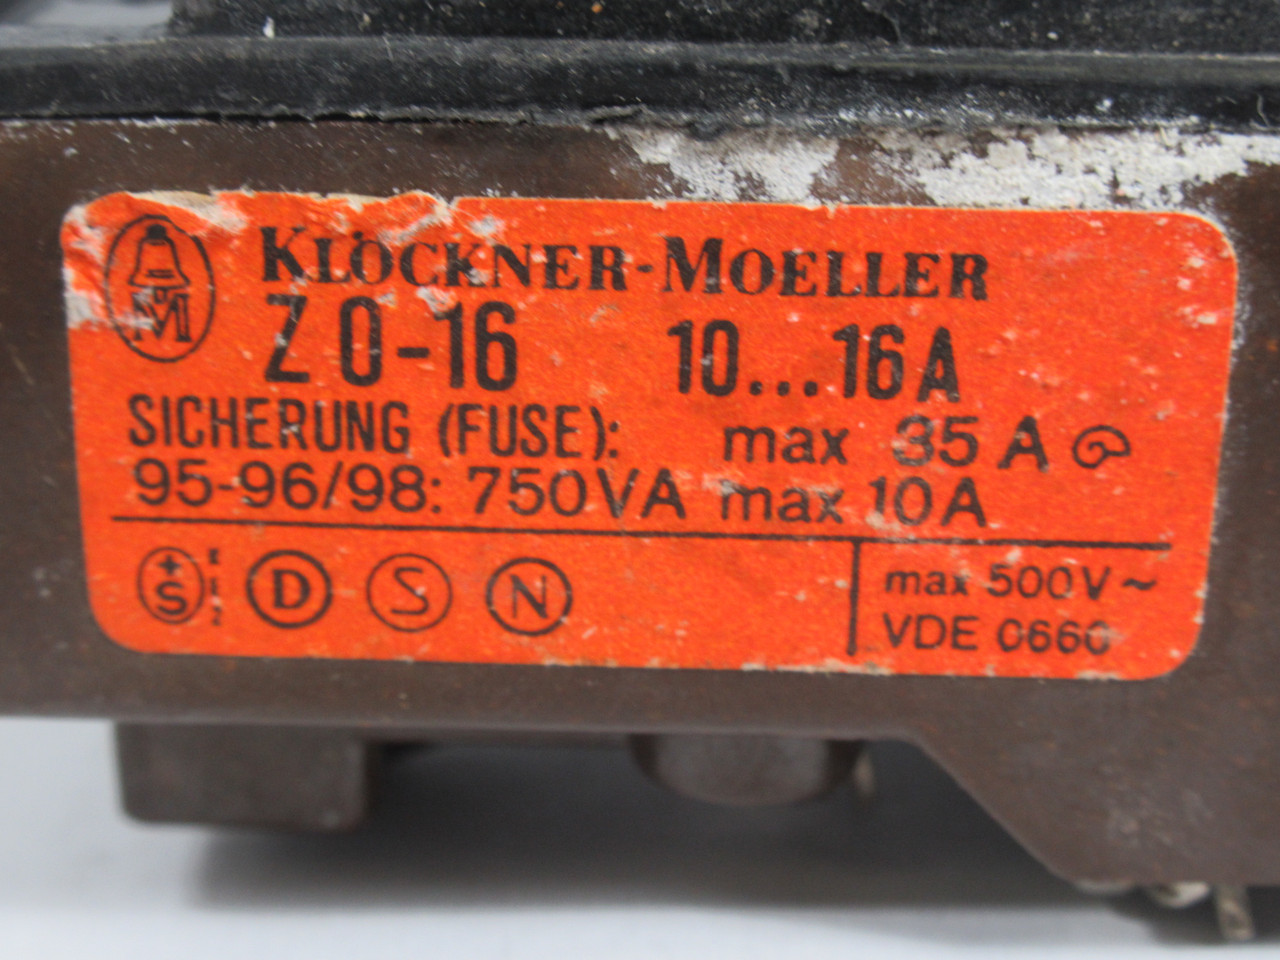 Klockner-Moeller Z0-16 Overload Relay 10-16A 500V USED